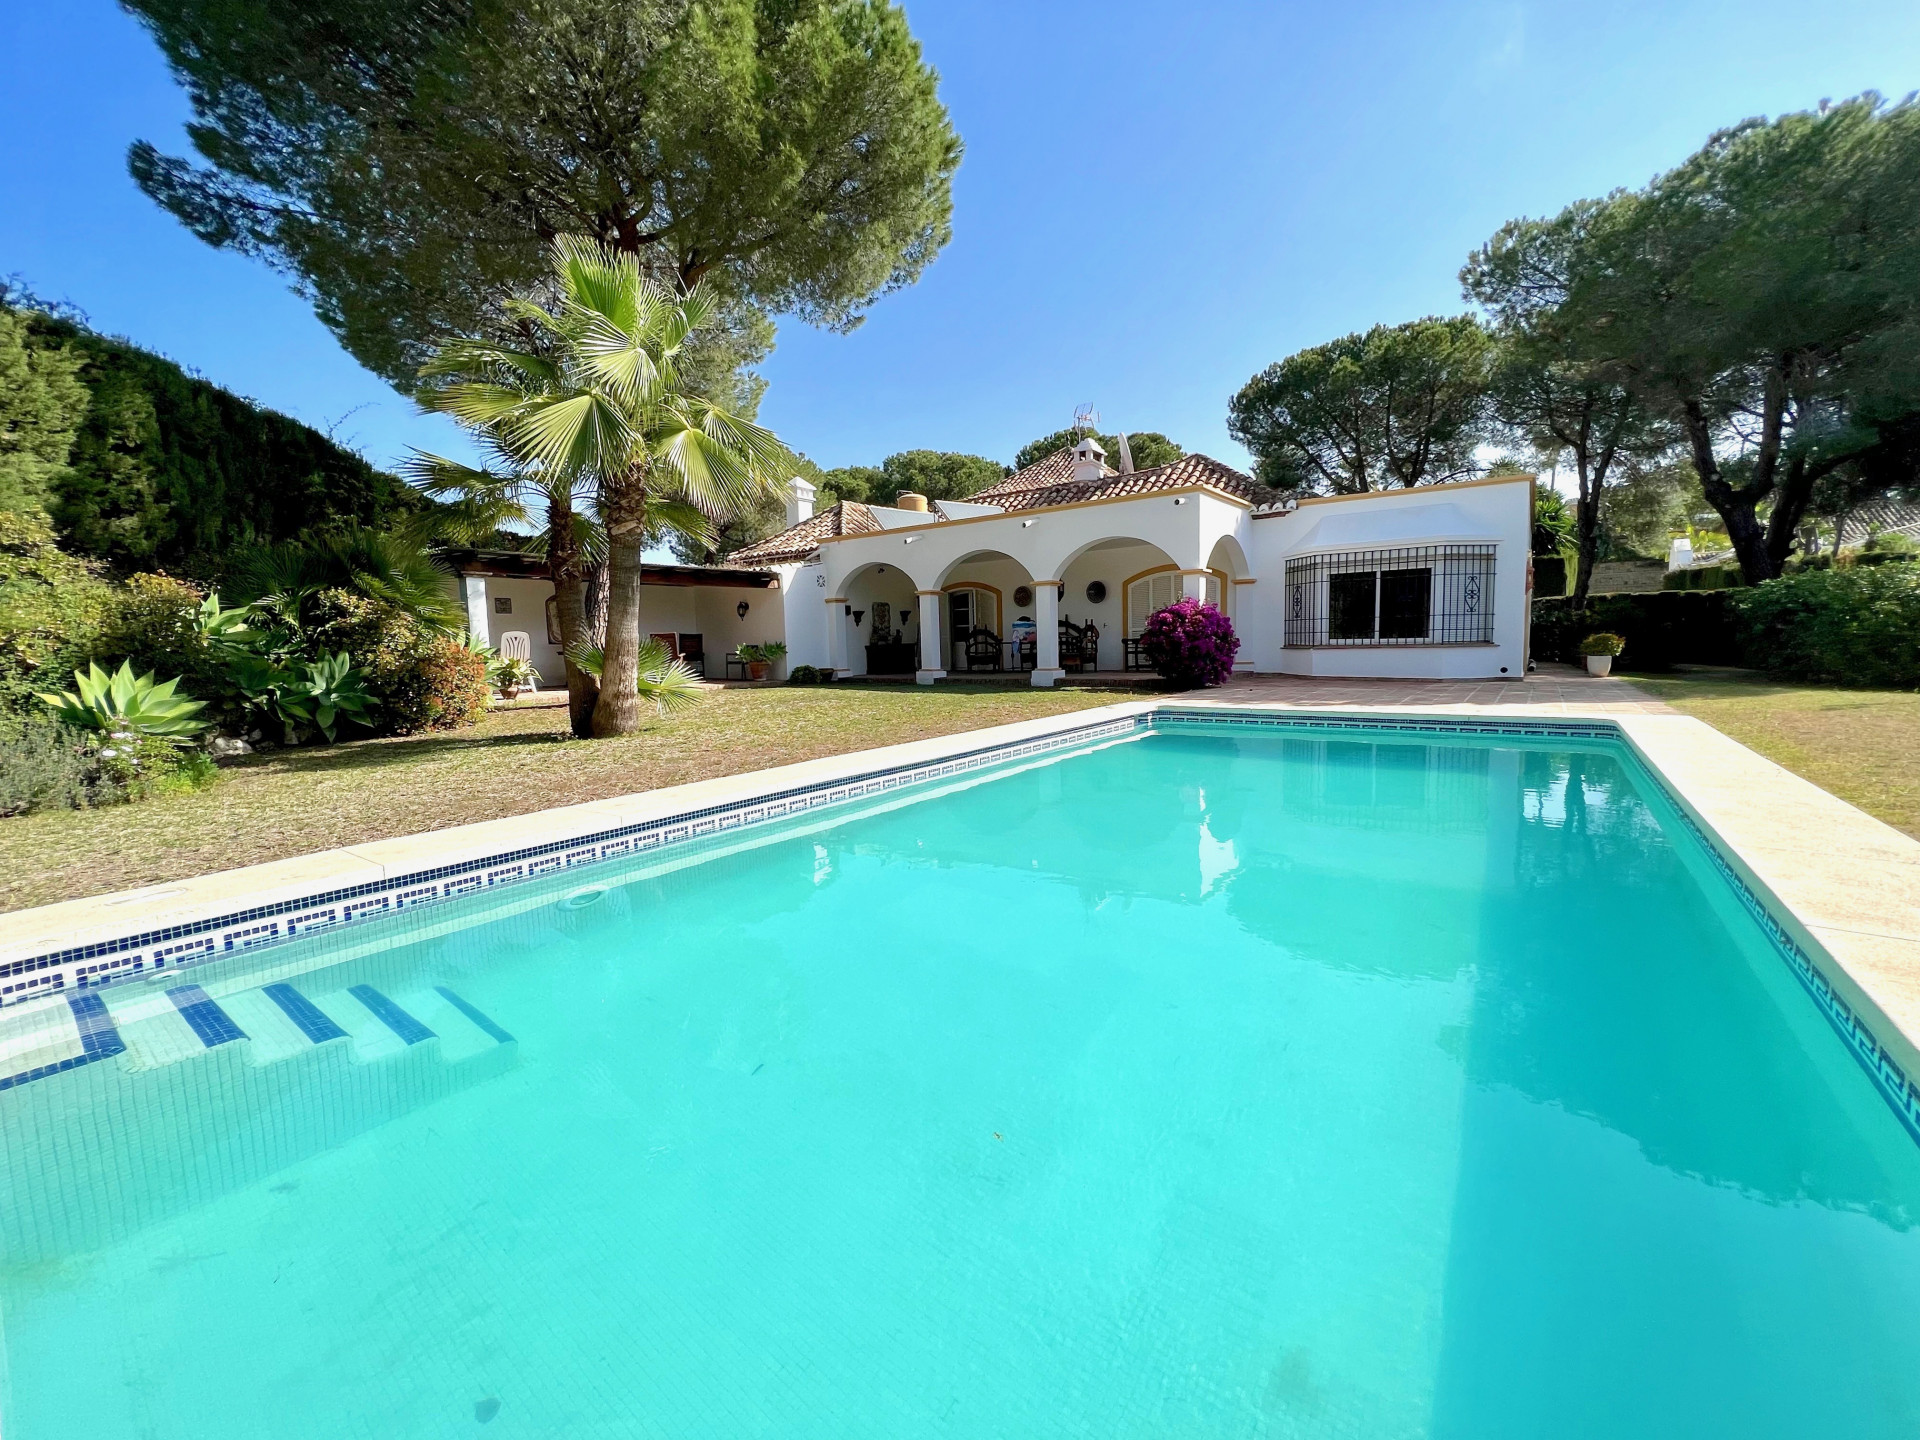 Beautiful Mediterranean, rustic style, villa with a beautiful inner patio in El Paraíso